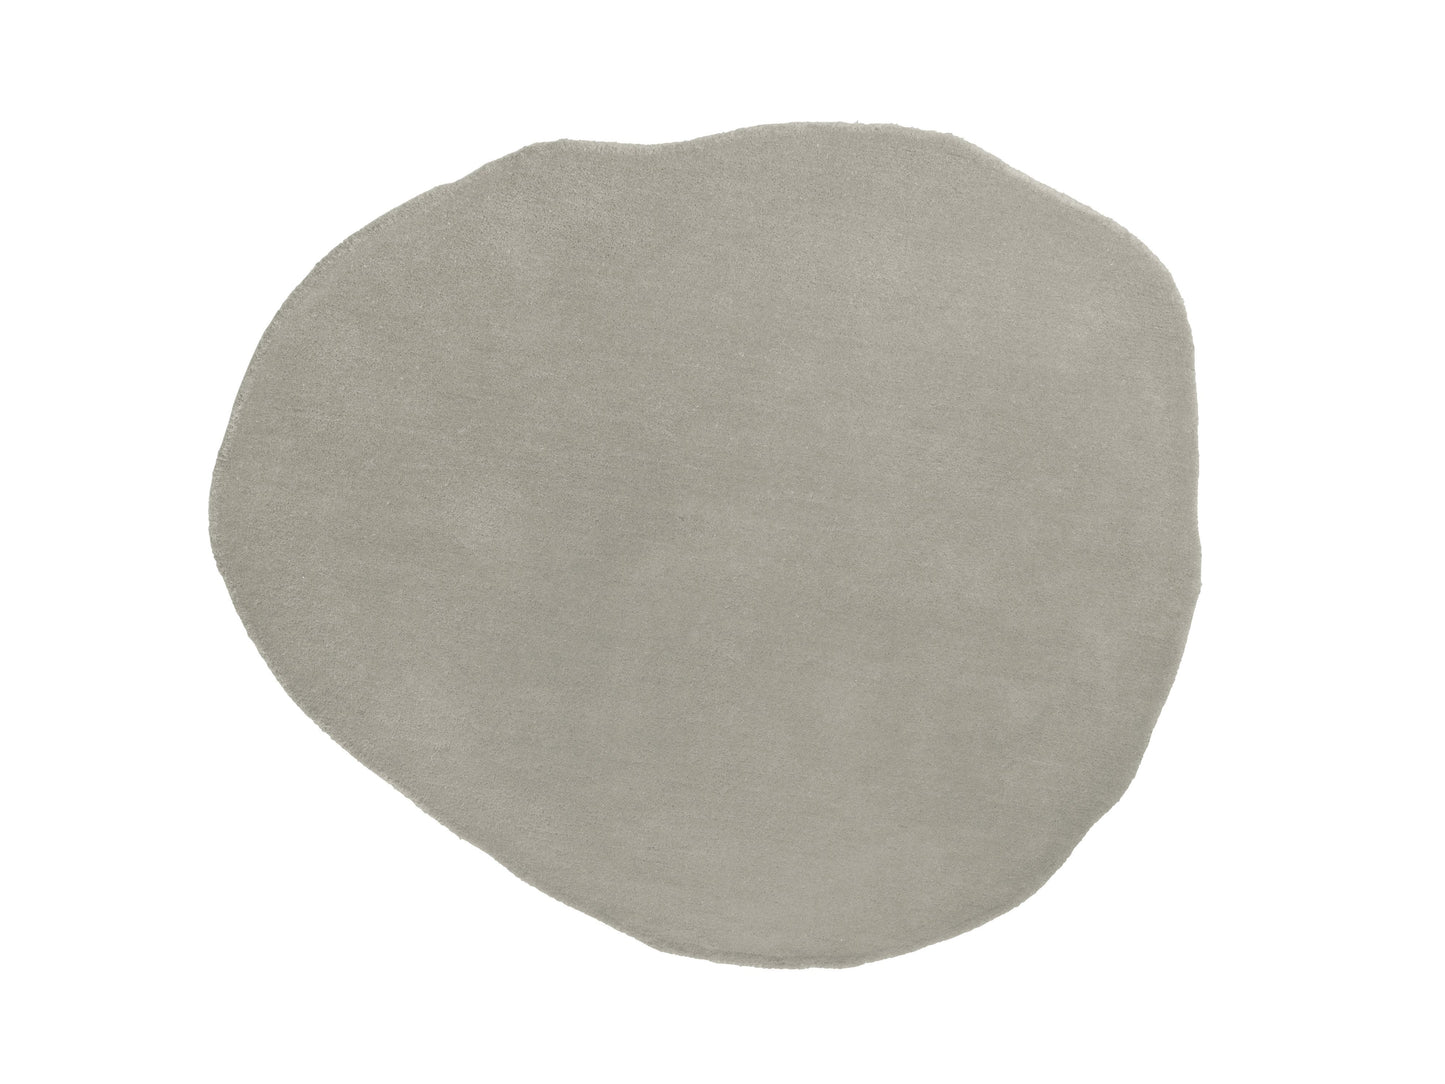 Leitmotiv Carpet Organic Round medium wool light grey